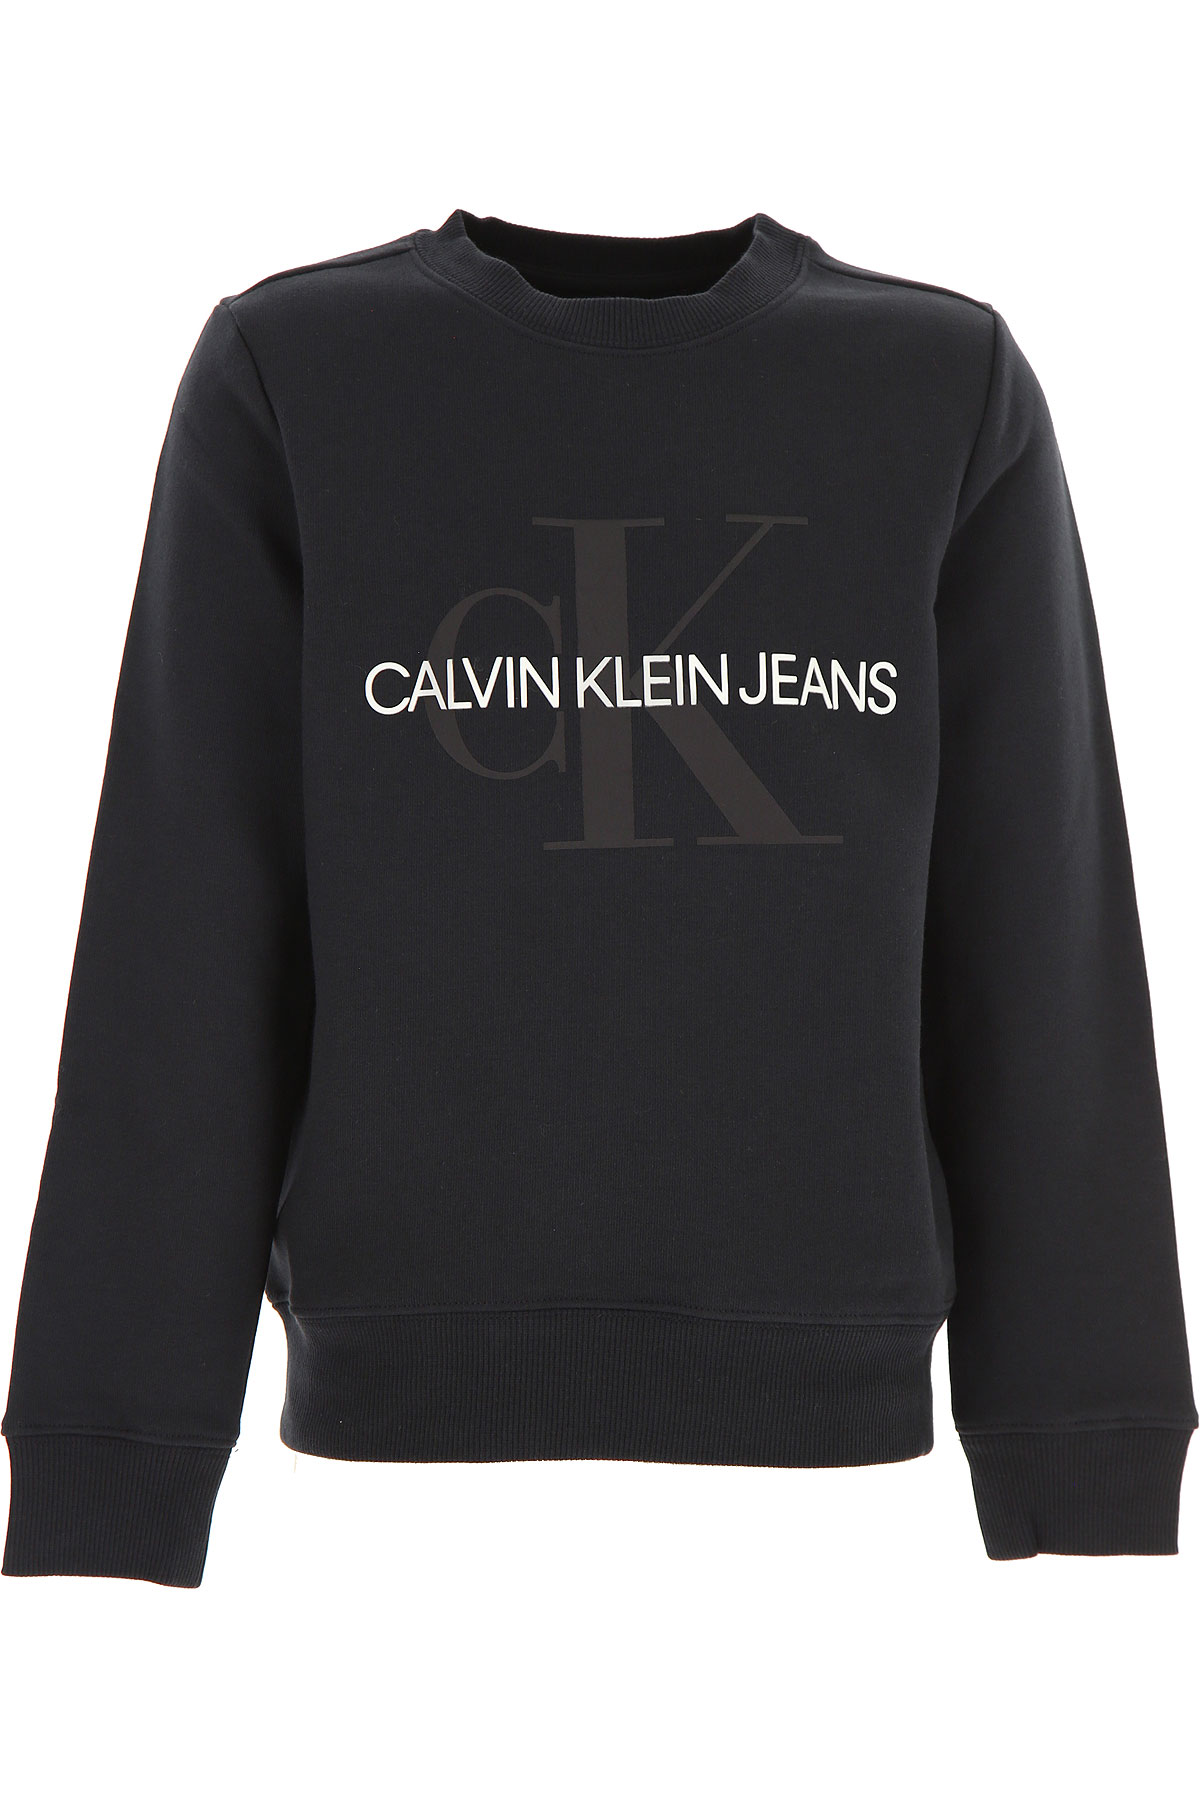 Calvin Klein Kinder Sweatshirt & Kapuzenpullover für Mädchen Günstig im Sale, Schwarz, Baumwolle, 2017, 10Y 14Y 16Y 4Y 6Y 8Y